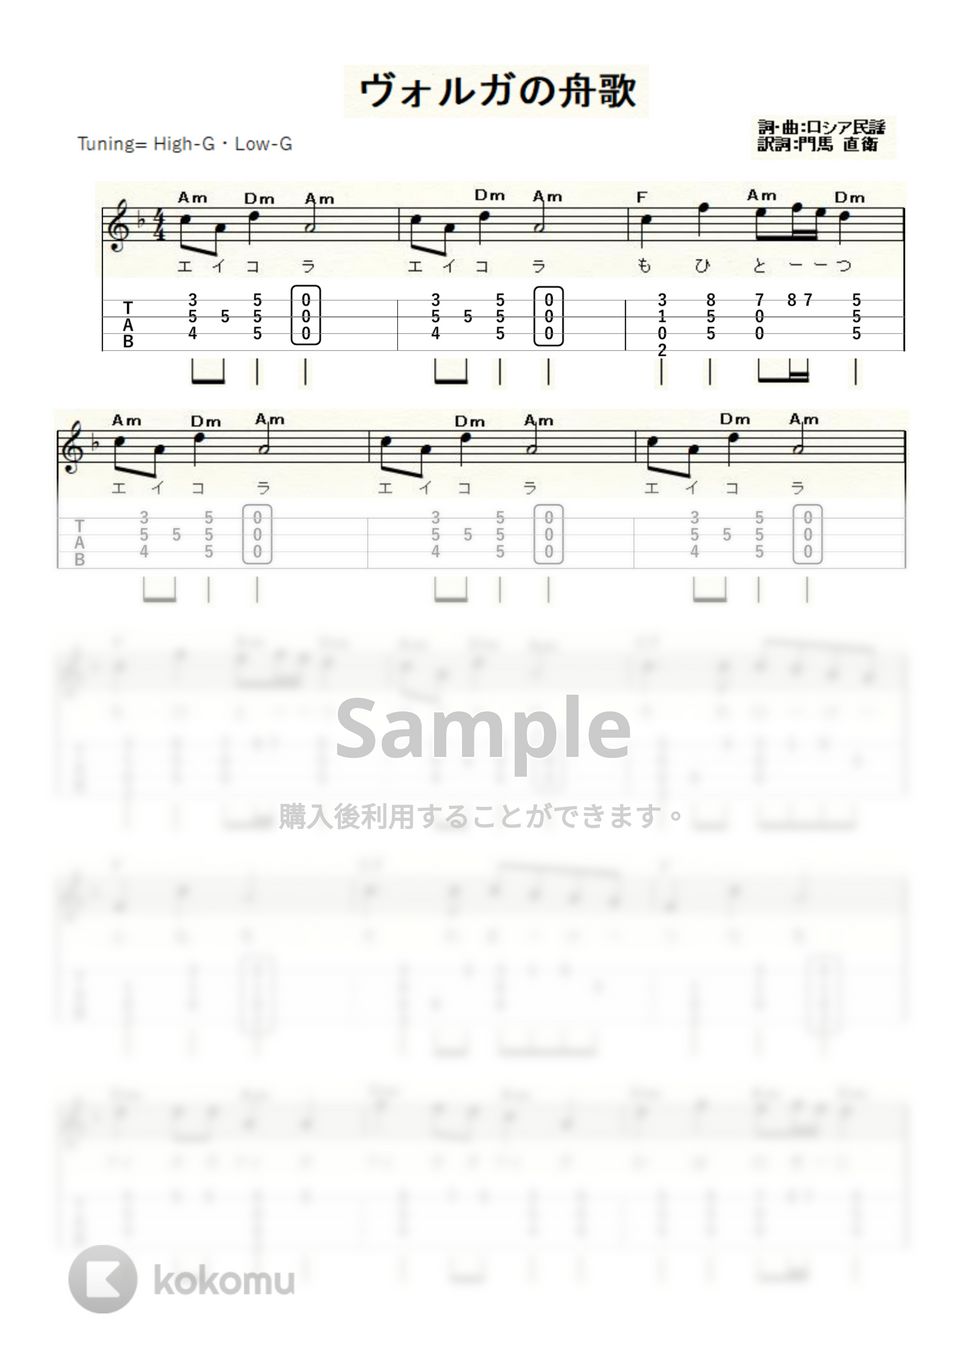 ヴォルガの舟歌 (ｳｸﾚﾚｿﾛ / High-G・Low-G / 初級～中級) by ukulelepapa